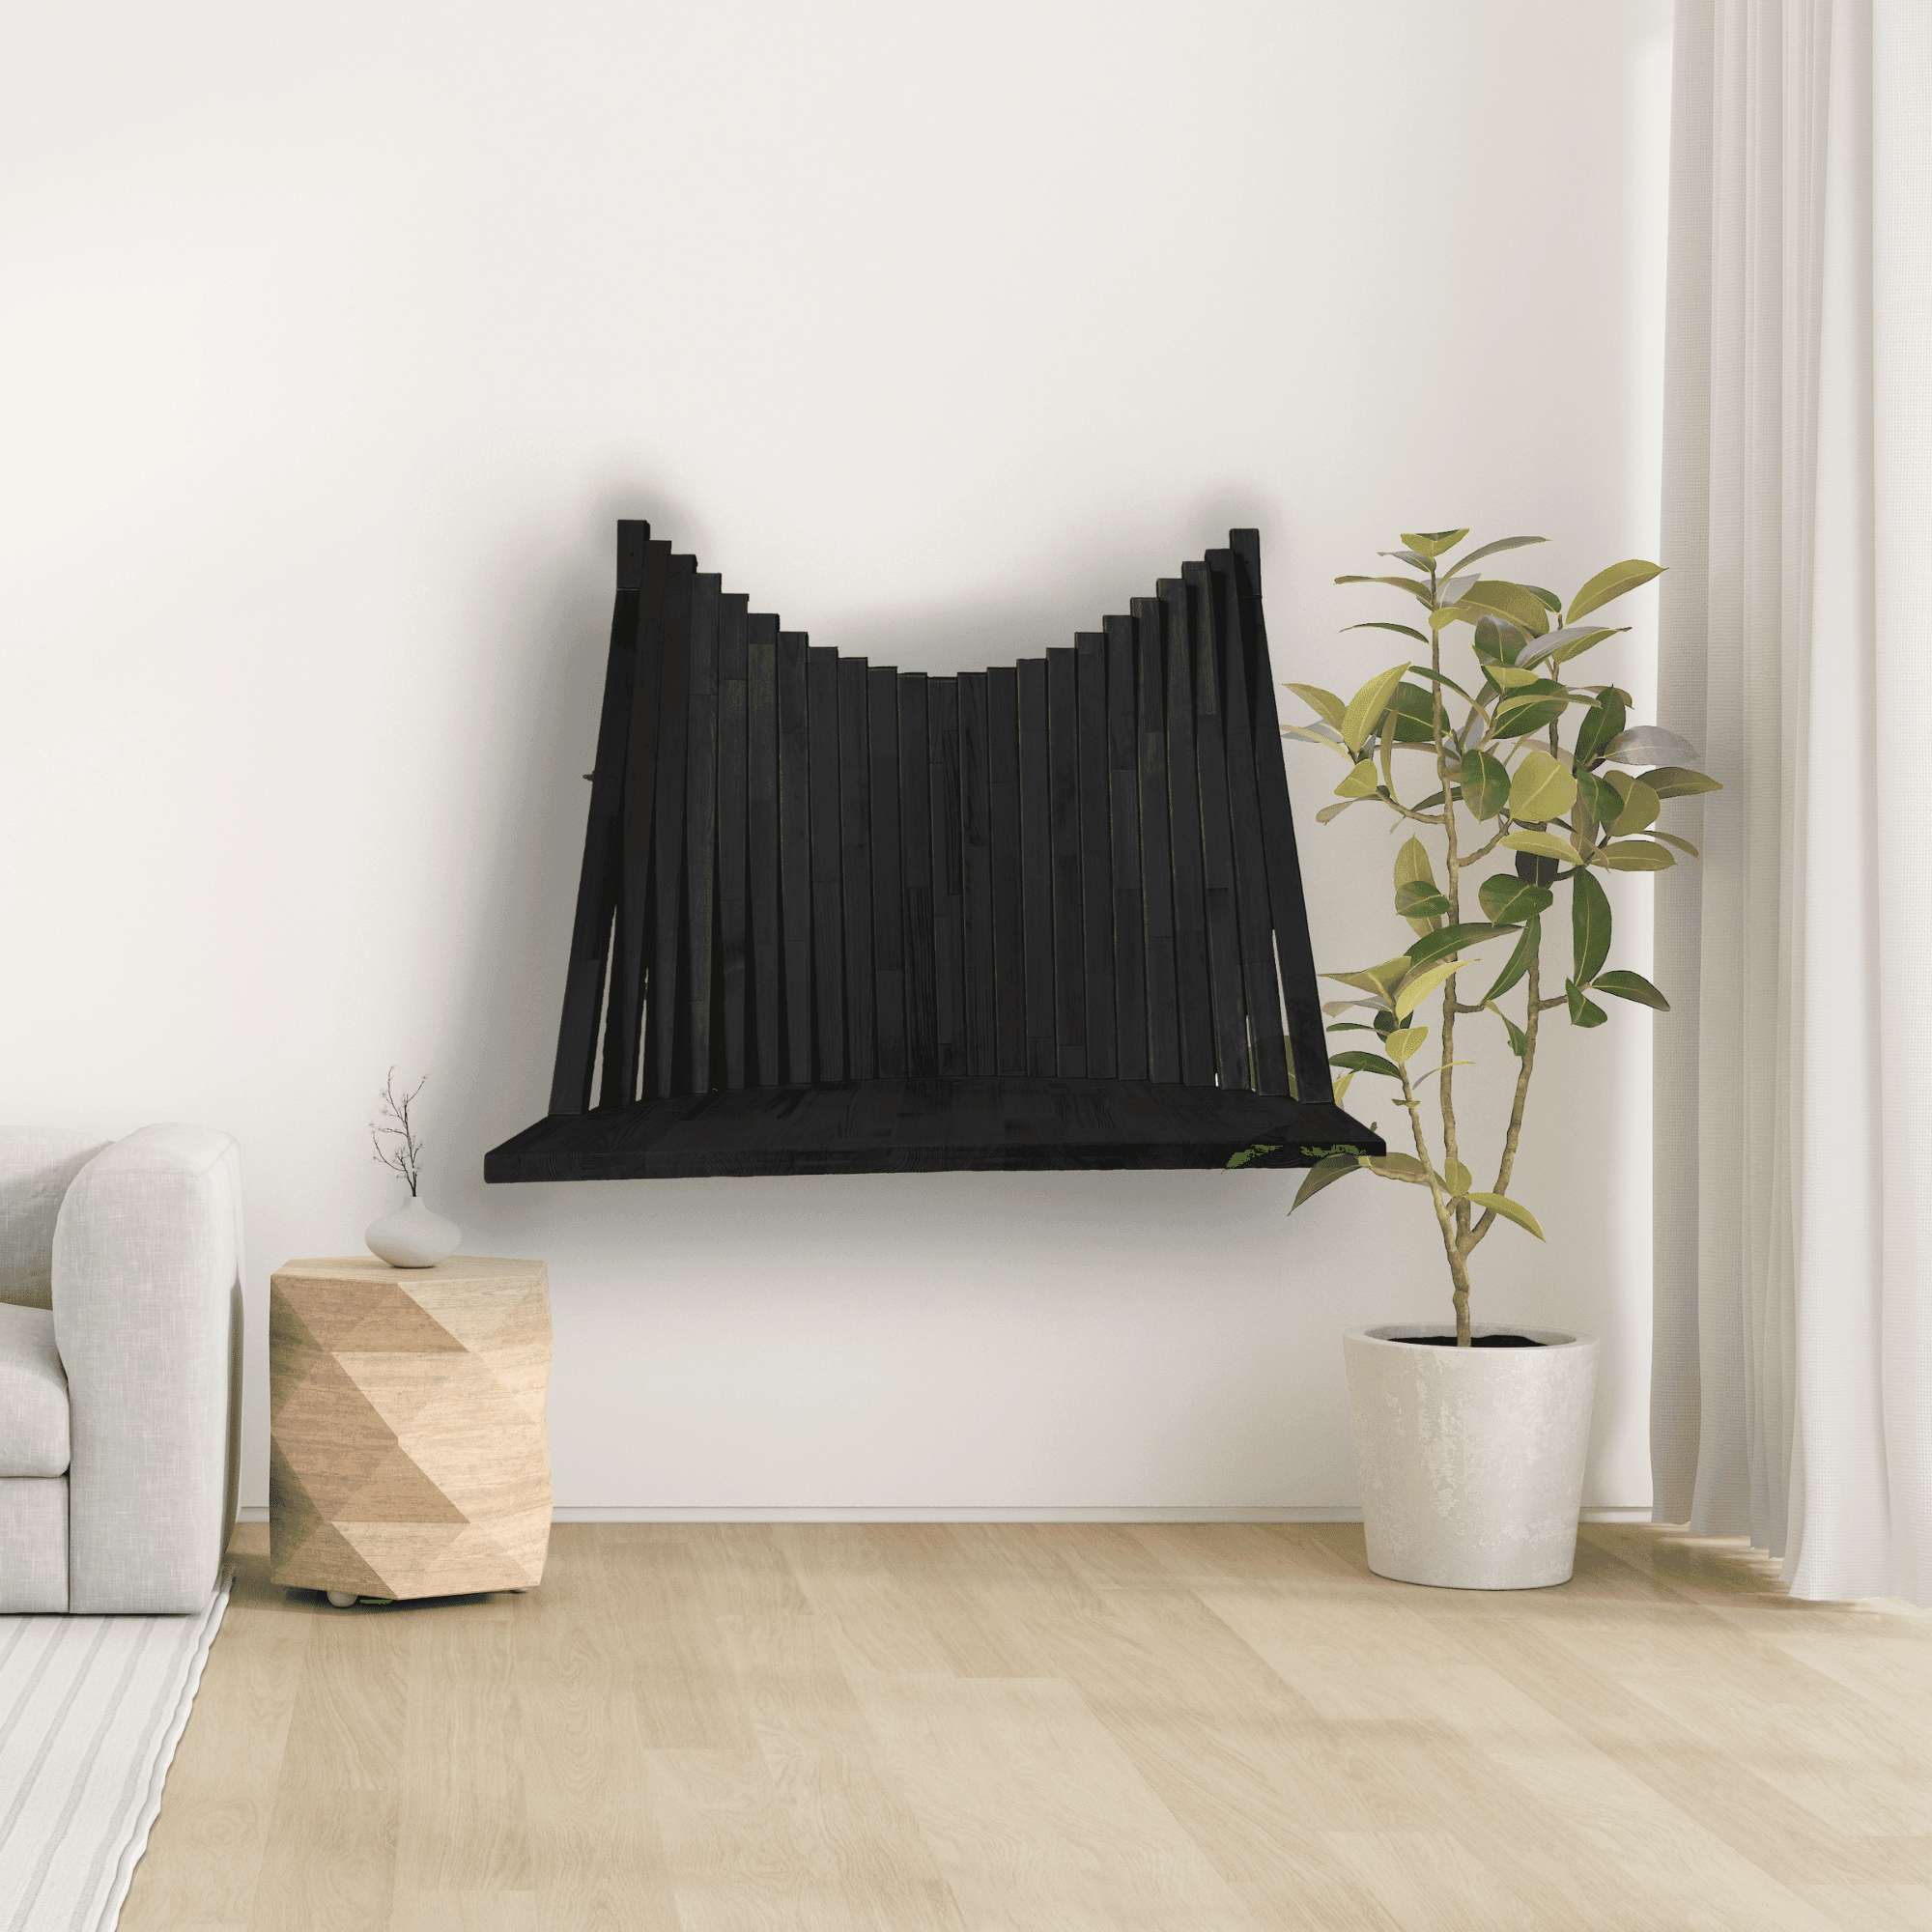 Flow Foldable Wall Desk | Wall Mounted Desk | Black